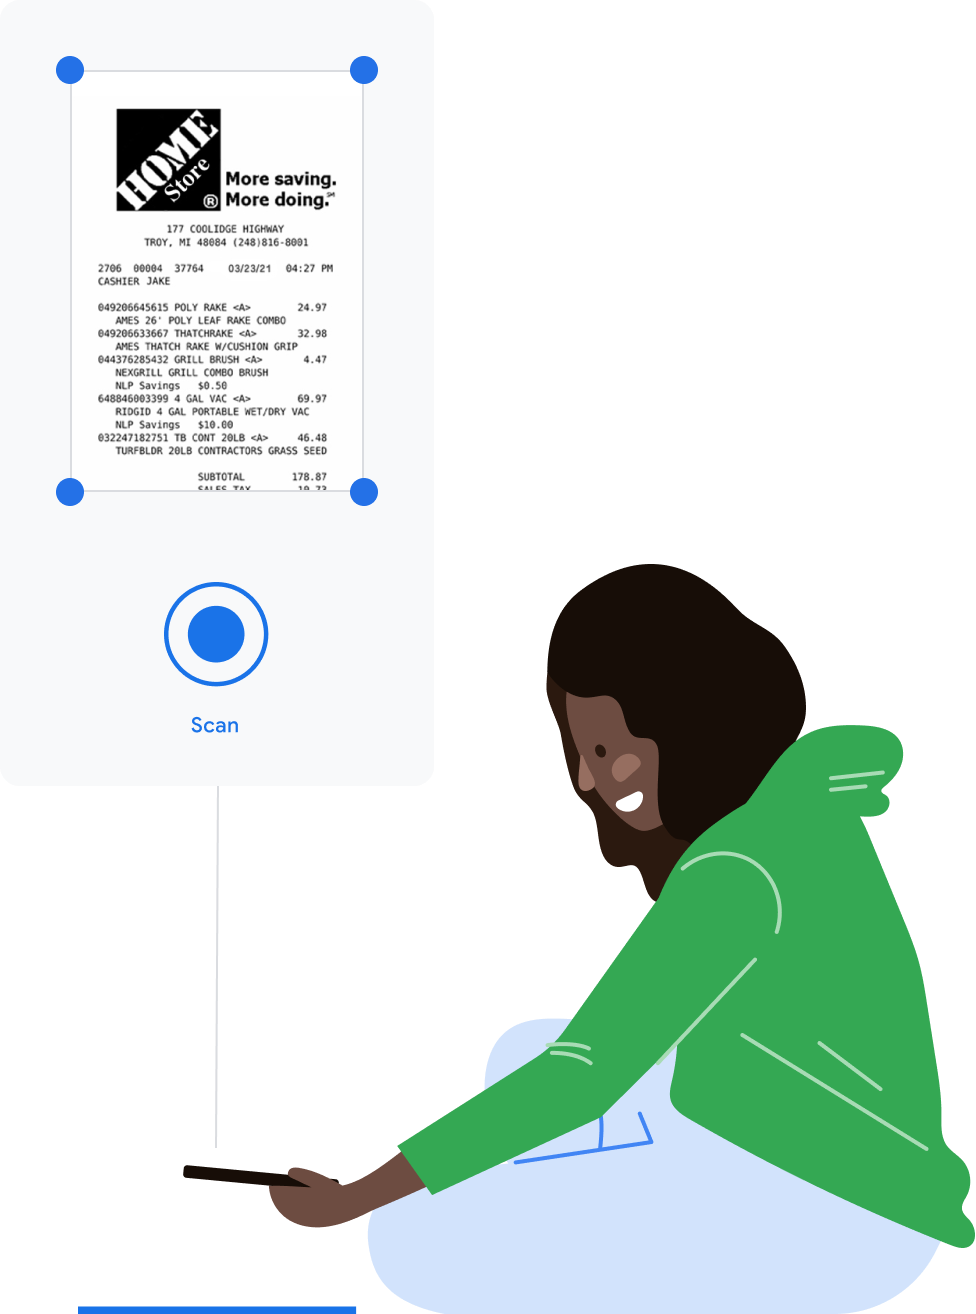 A diagram of a user scanning a Home Depot receipt.